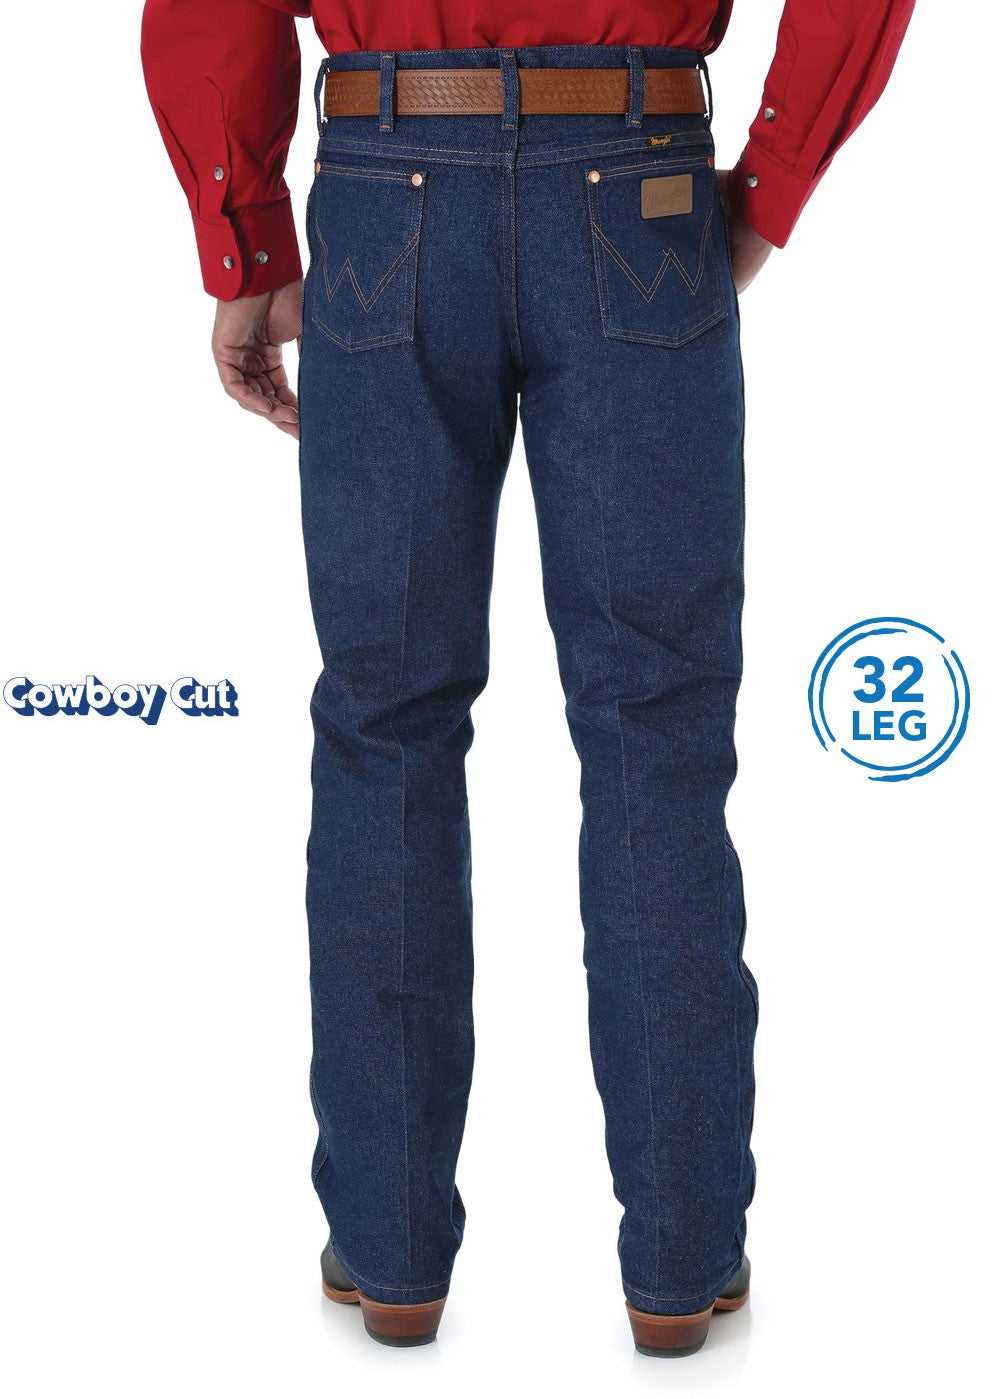 Wrangler Cowboy Cut Slim Fit Men's Jeans